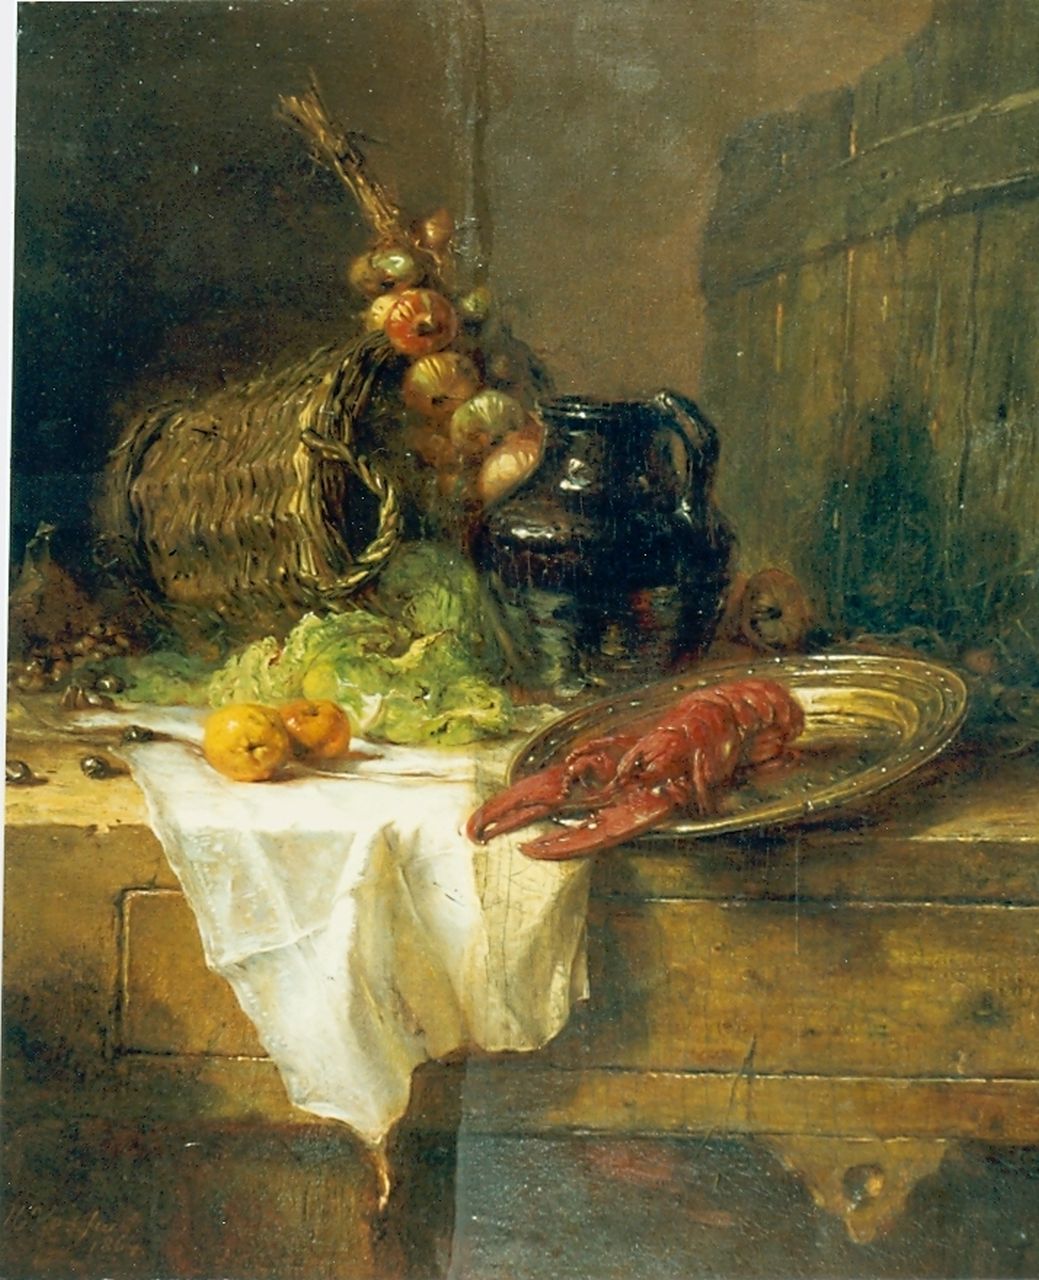 Vos M.  | Maria Vos, Stilleven, olieverf op paneel 35,0 x 29,5 cm, gesigneerd linksonder en gedateerd 1864